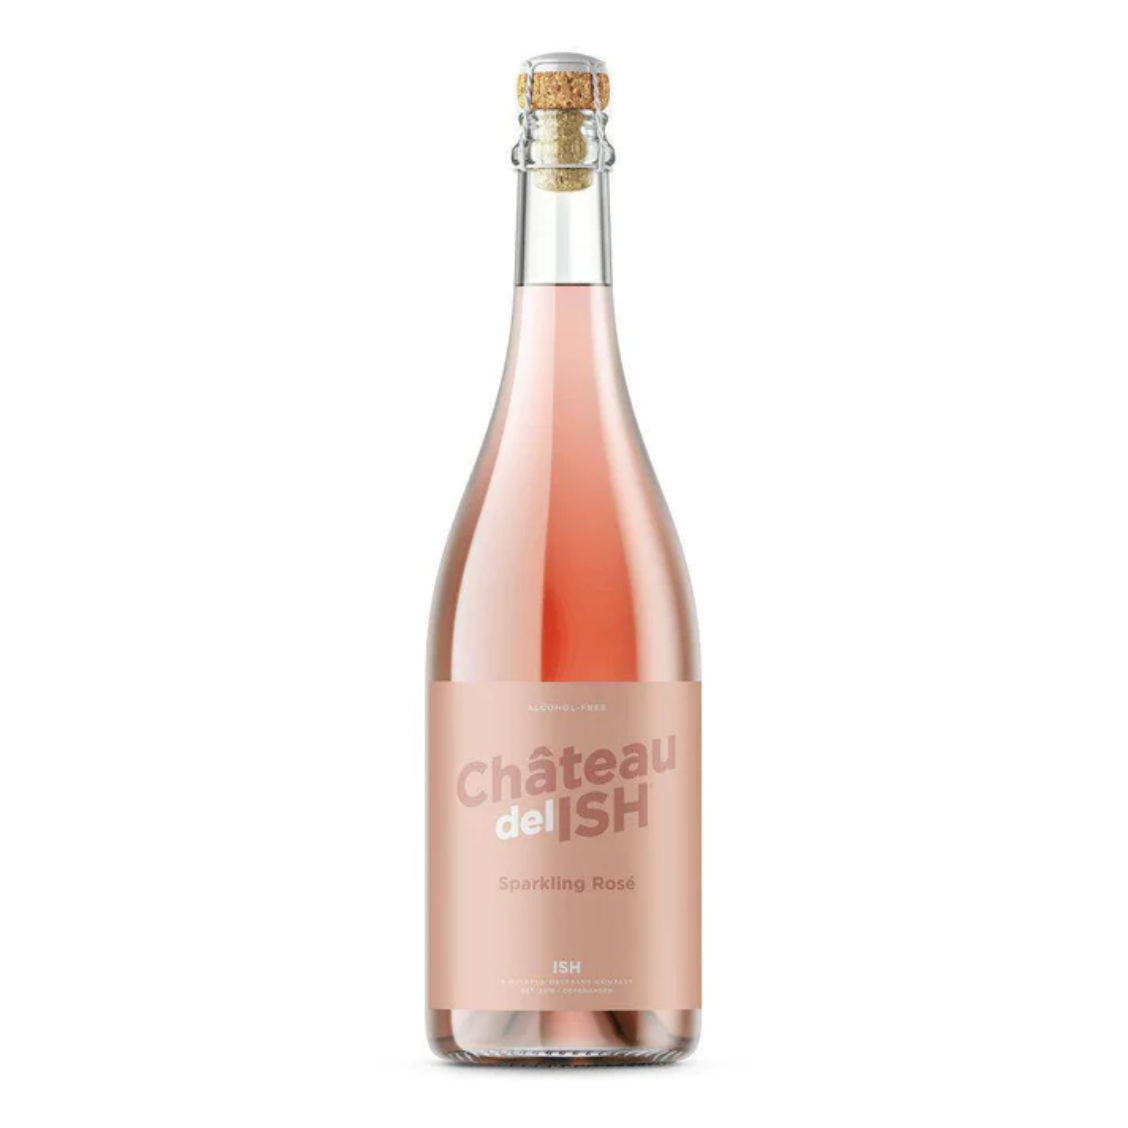 Château delish — non-alcoholic sparkling rosé